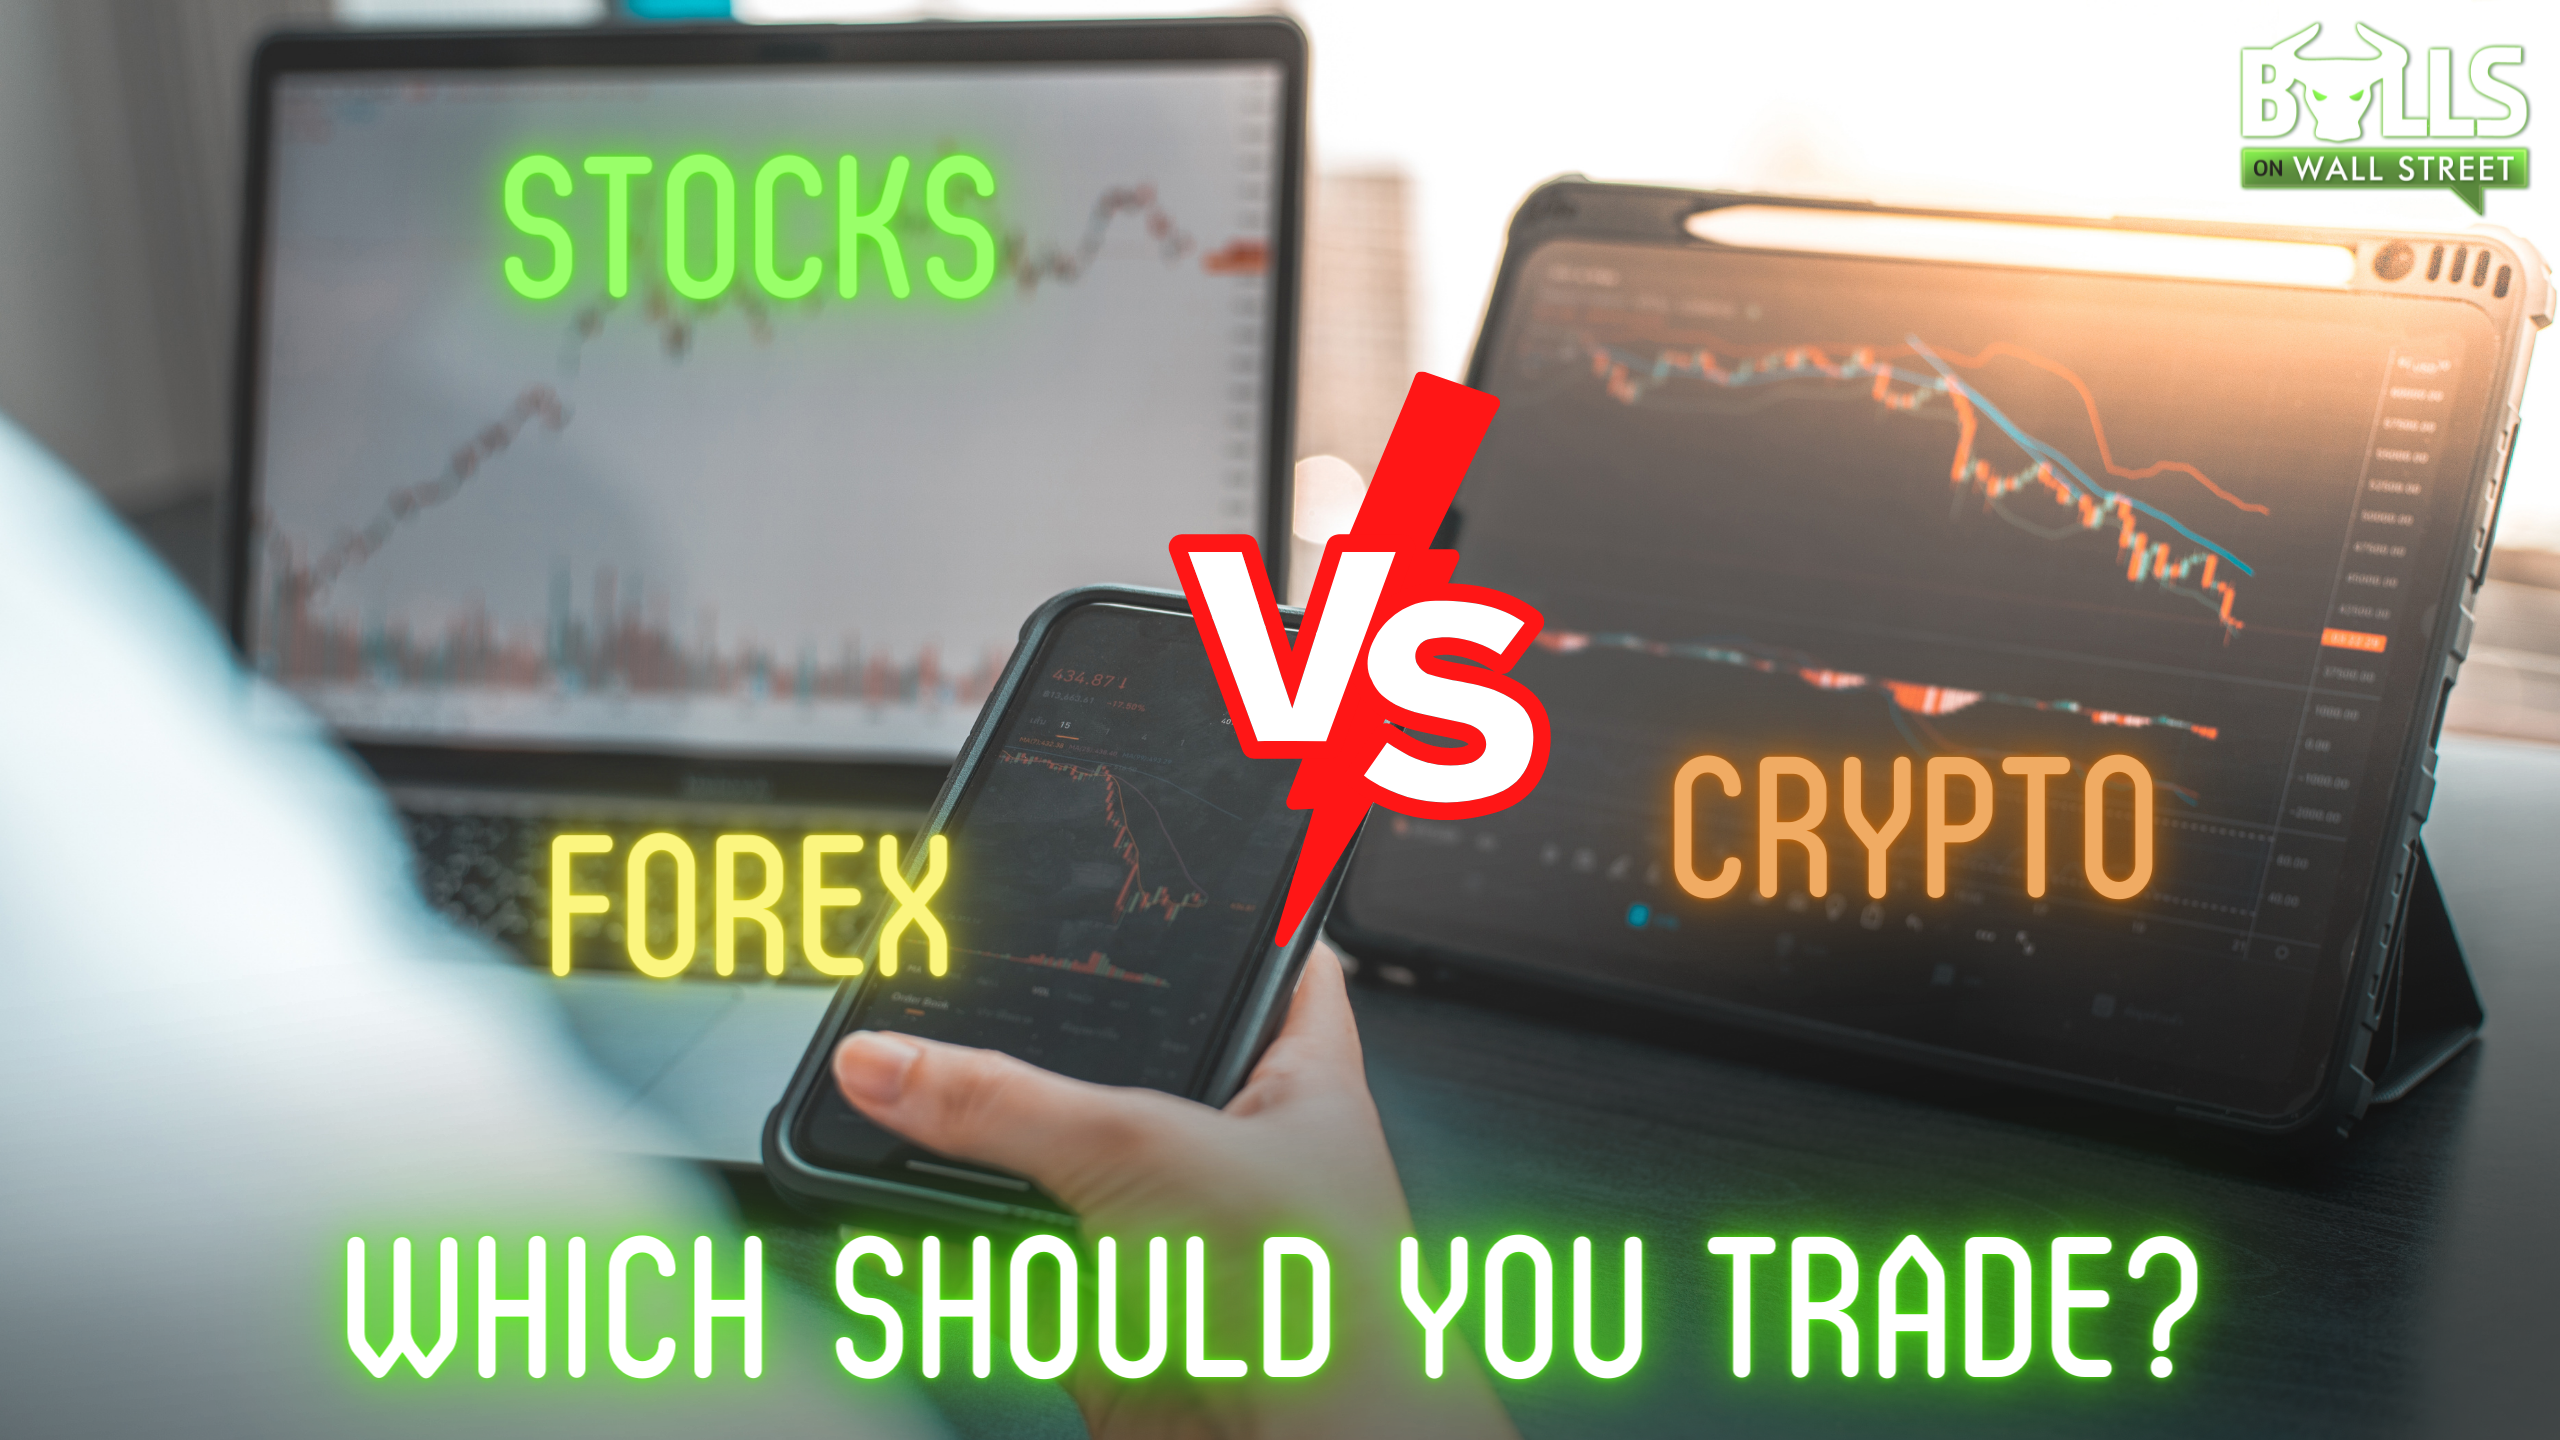 stocks vs forex vs crypto